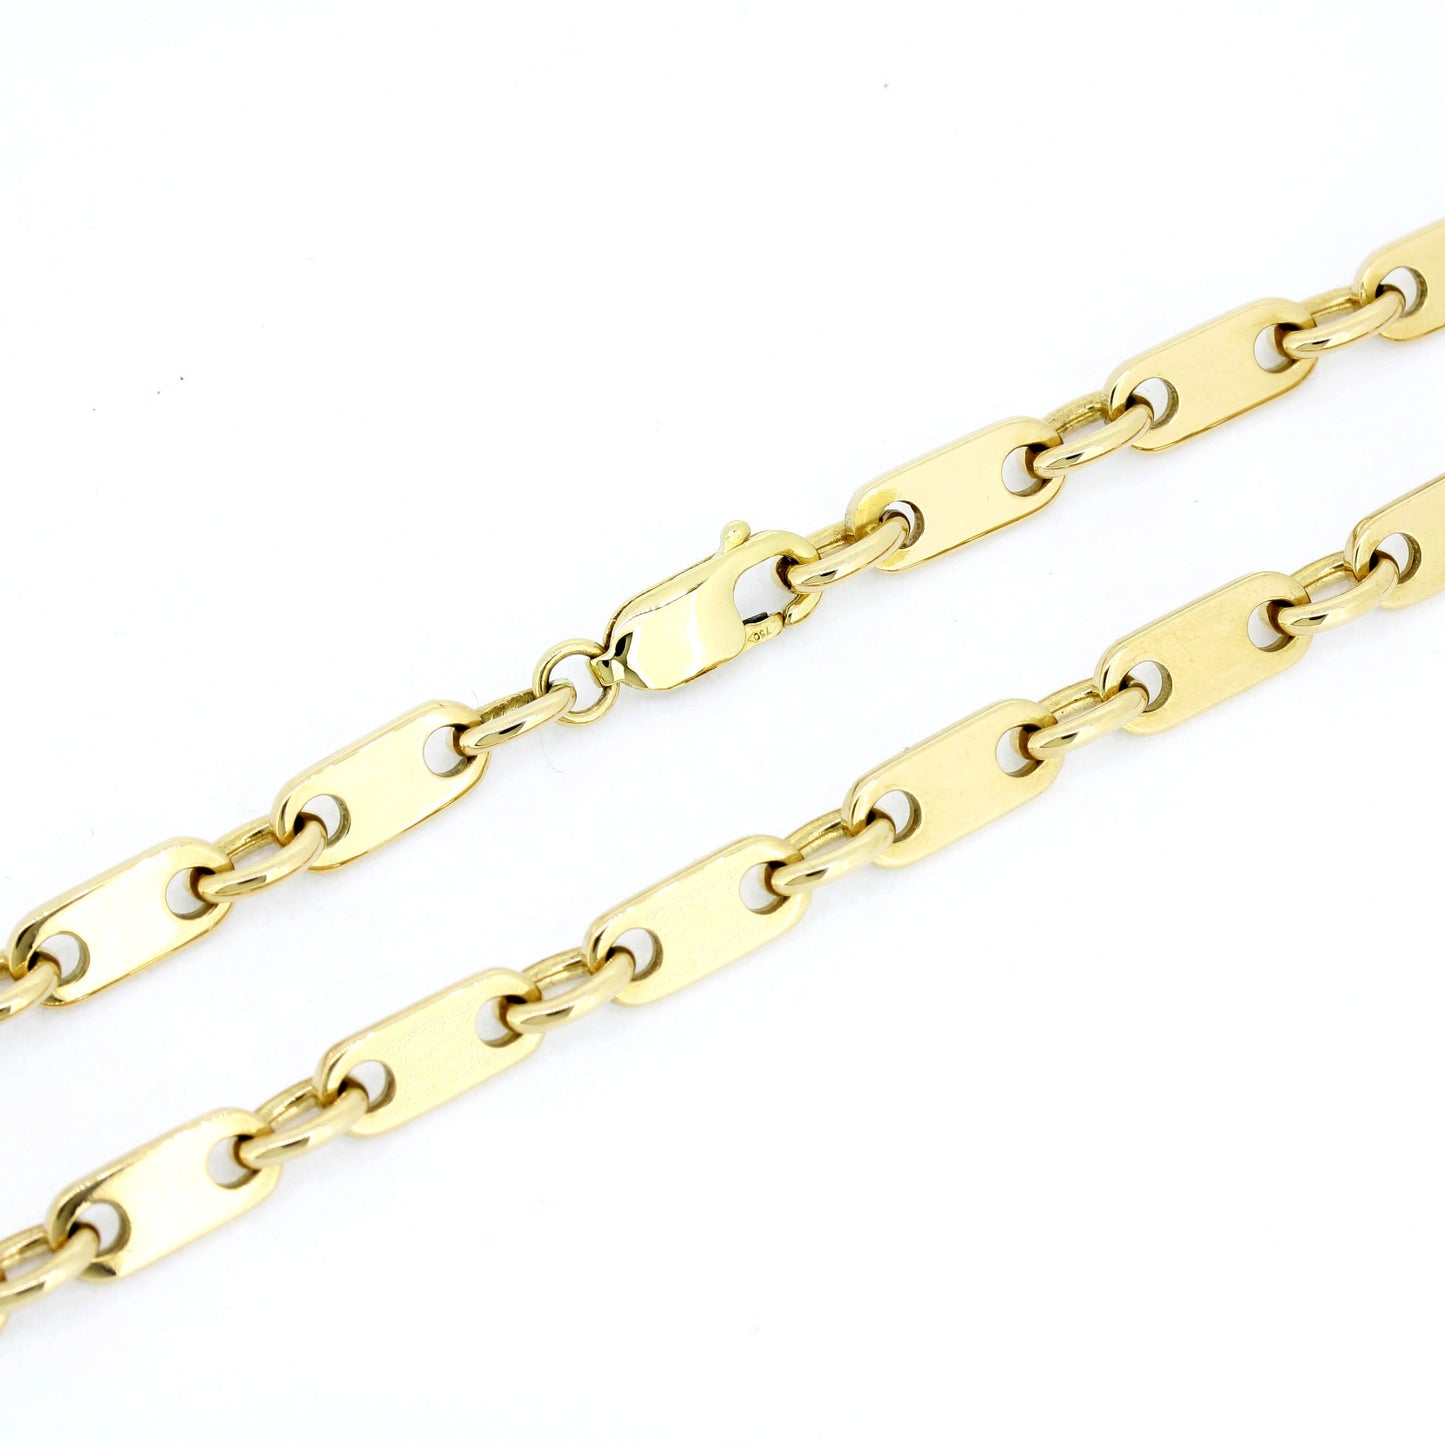 Platten Halskette 750 Gold 18 Kt Gelbgold - Kettenlänge 54 cm - Wert 6830,-